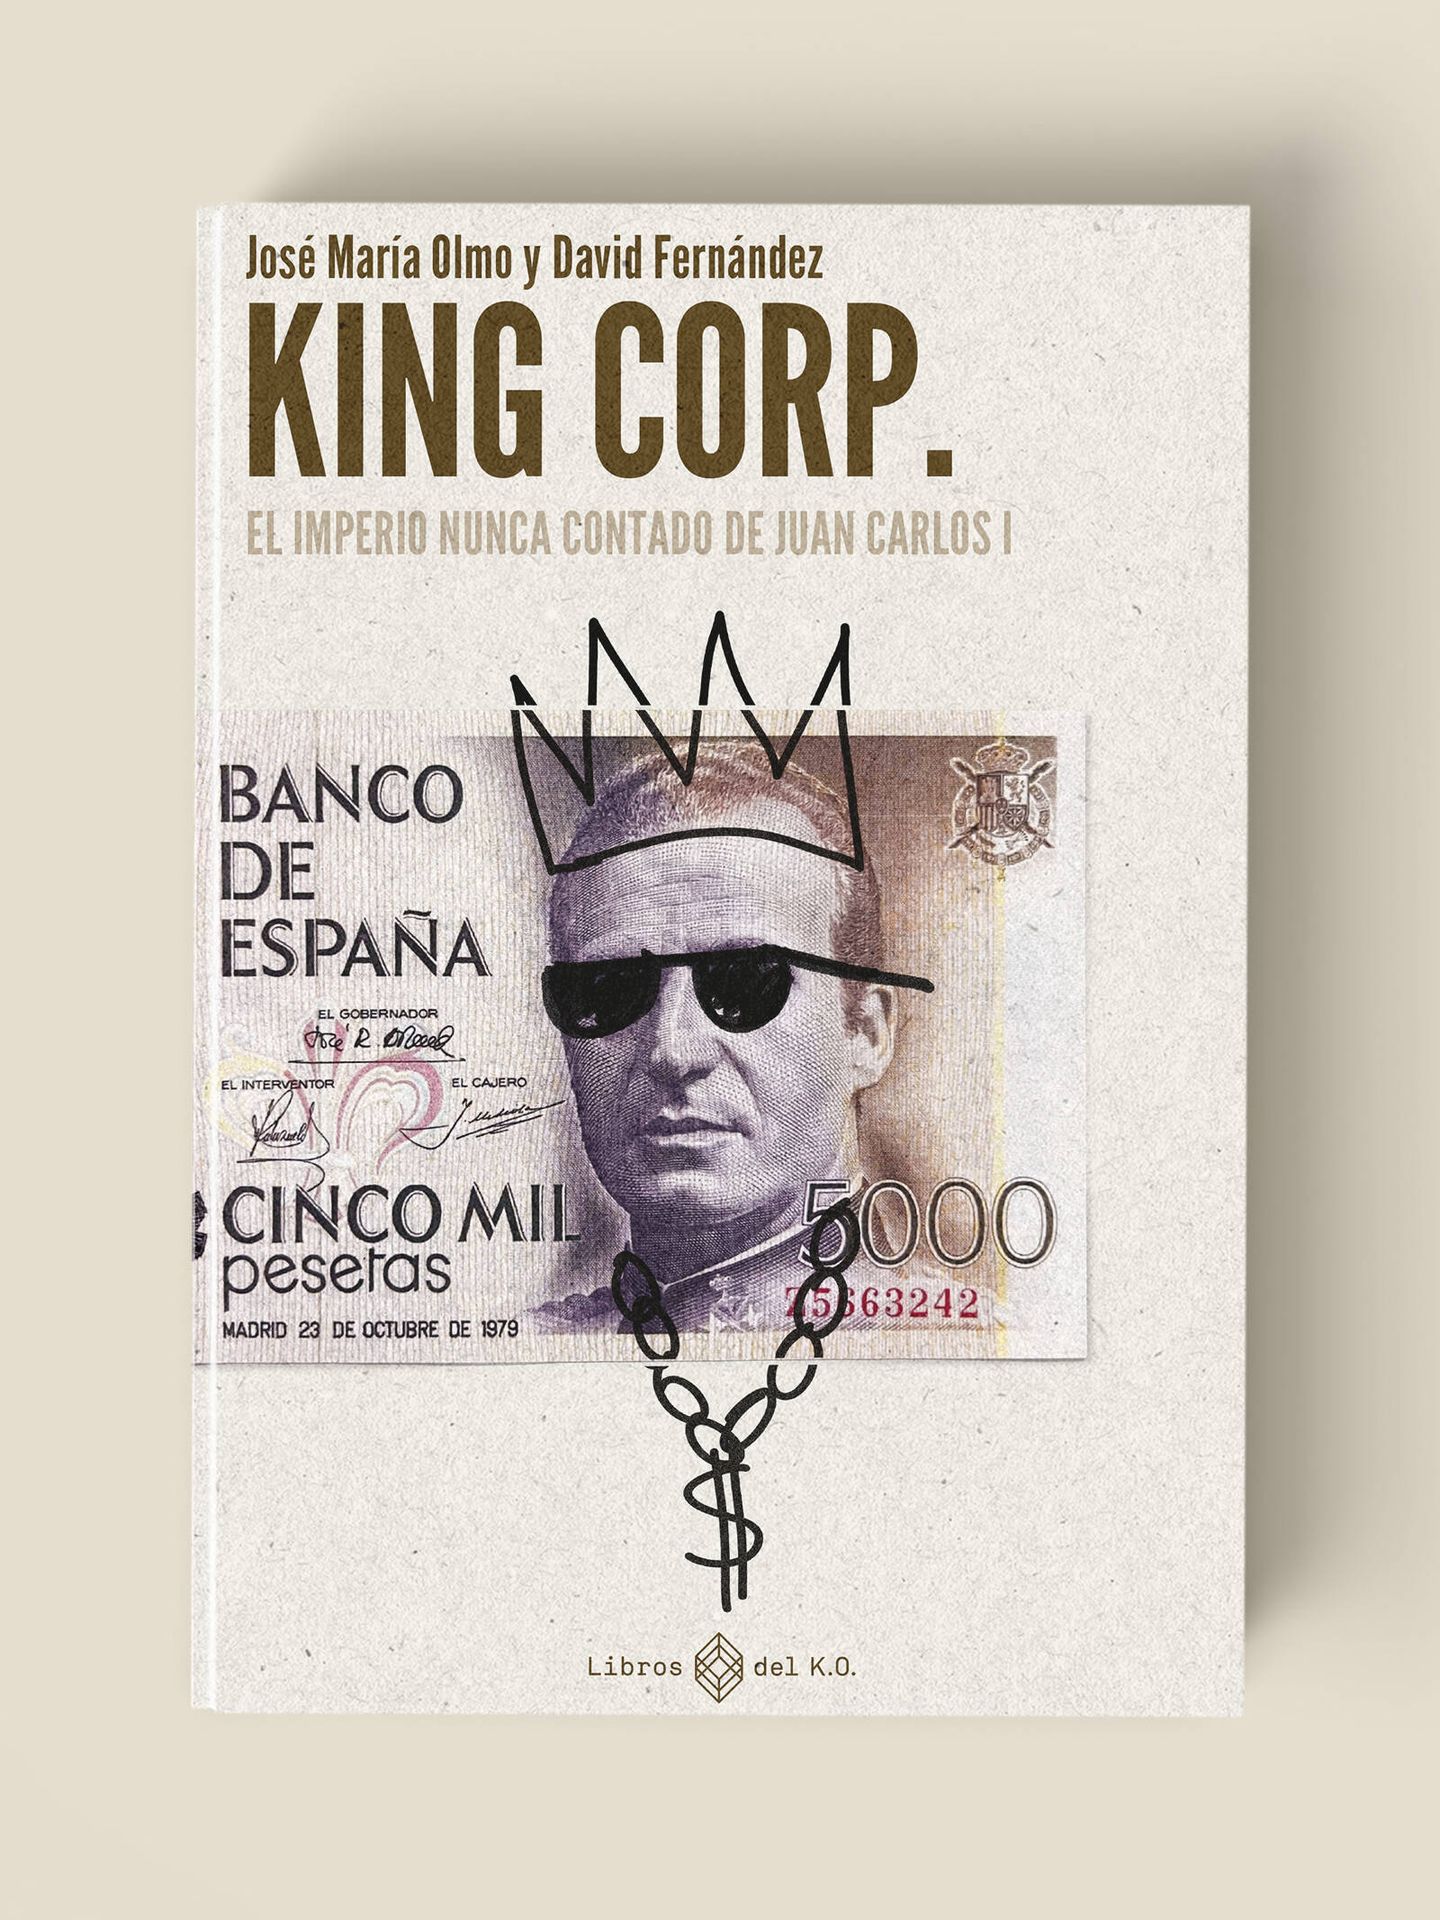 'King Corp. El imperio nunca contado de Juan Carlos I', de José María Olmo y David Fernández, publicado por Libros del K.O.